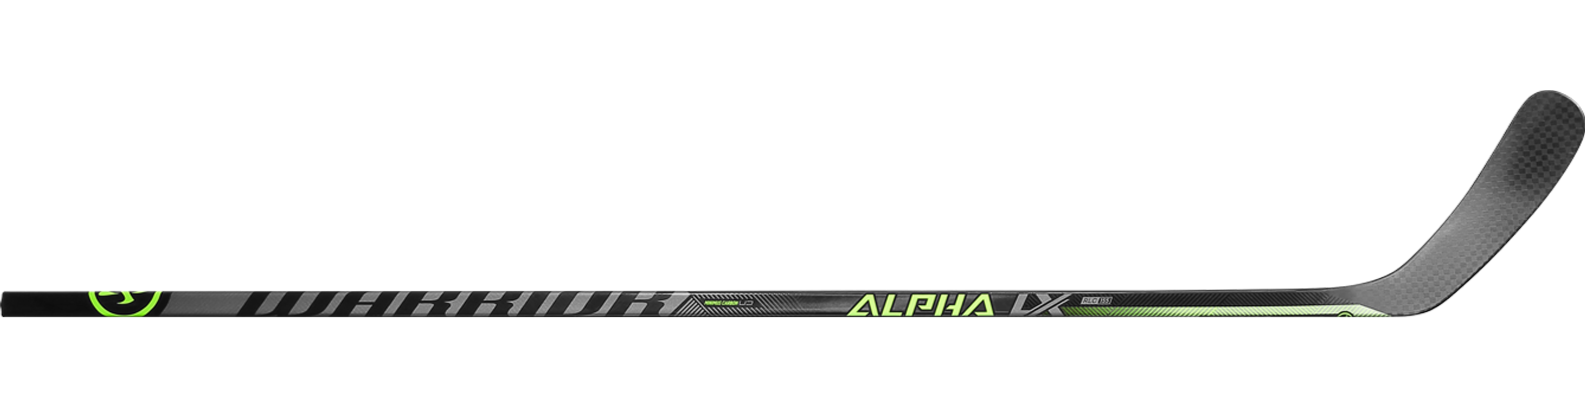 Warrior Alpha LX 20 Bâton de Hockey Junior